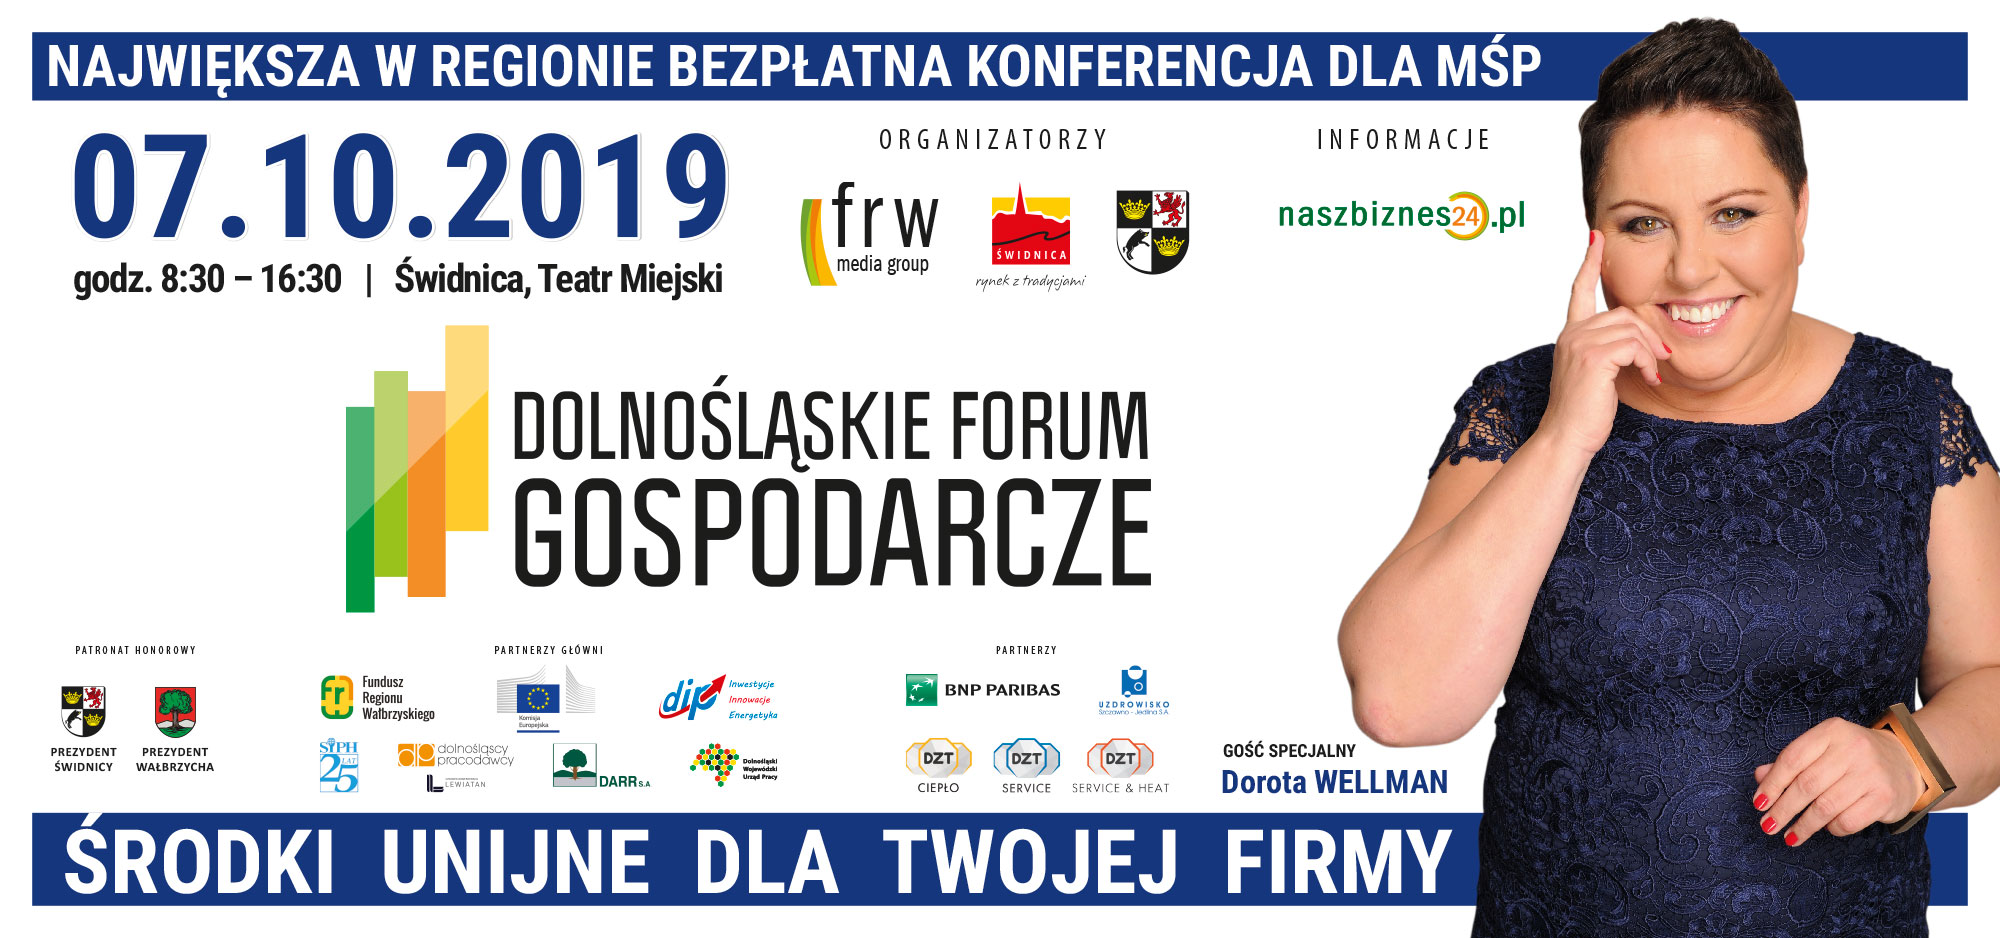 ZAPROSZENIE – Dolnośląskie Forum Gospodarcze – Świdnica 07.10.2019